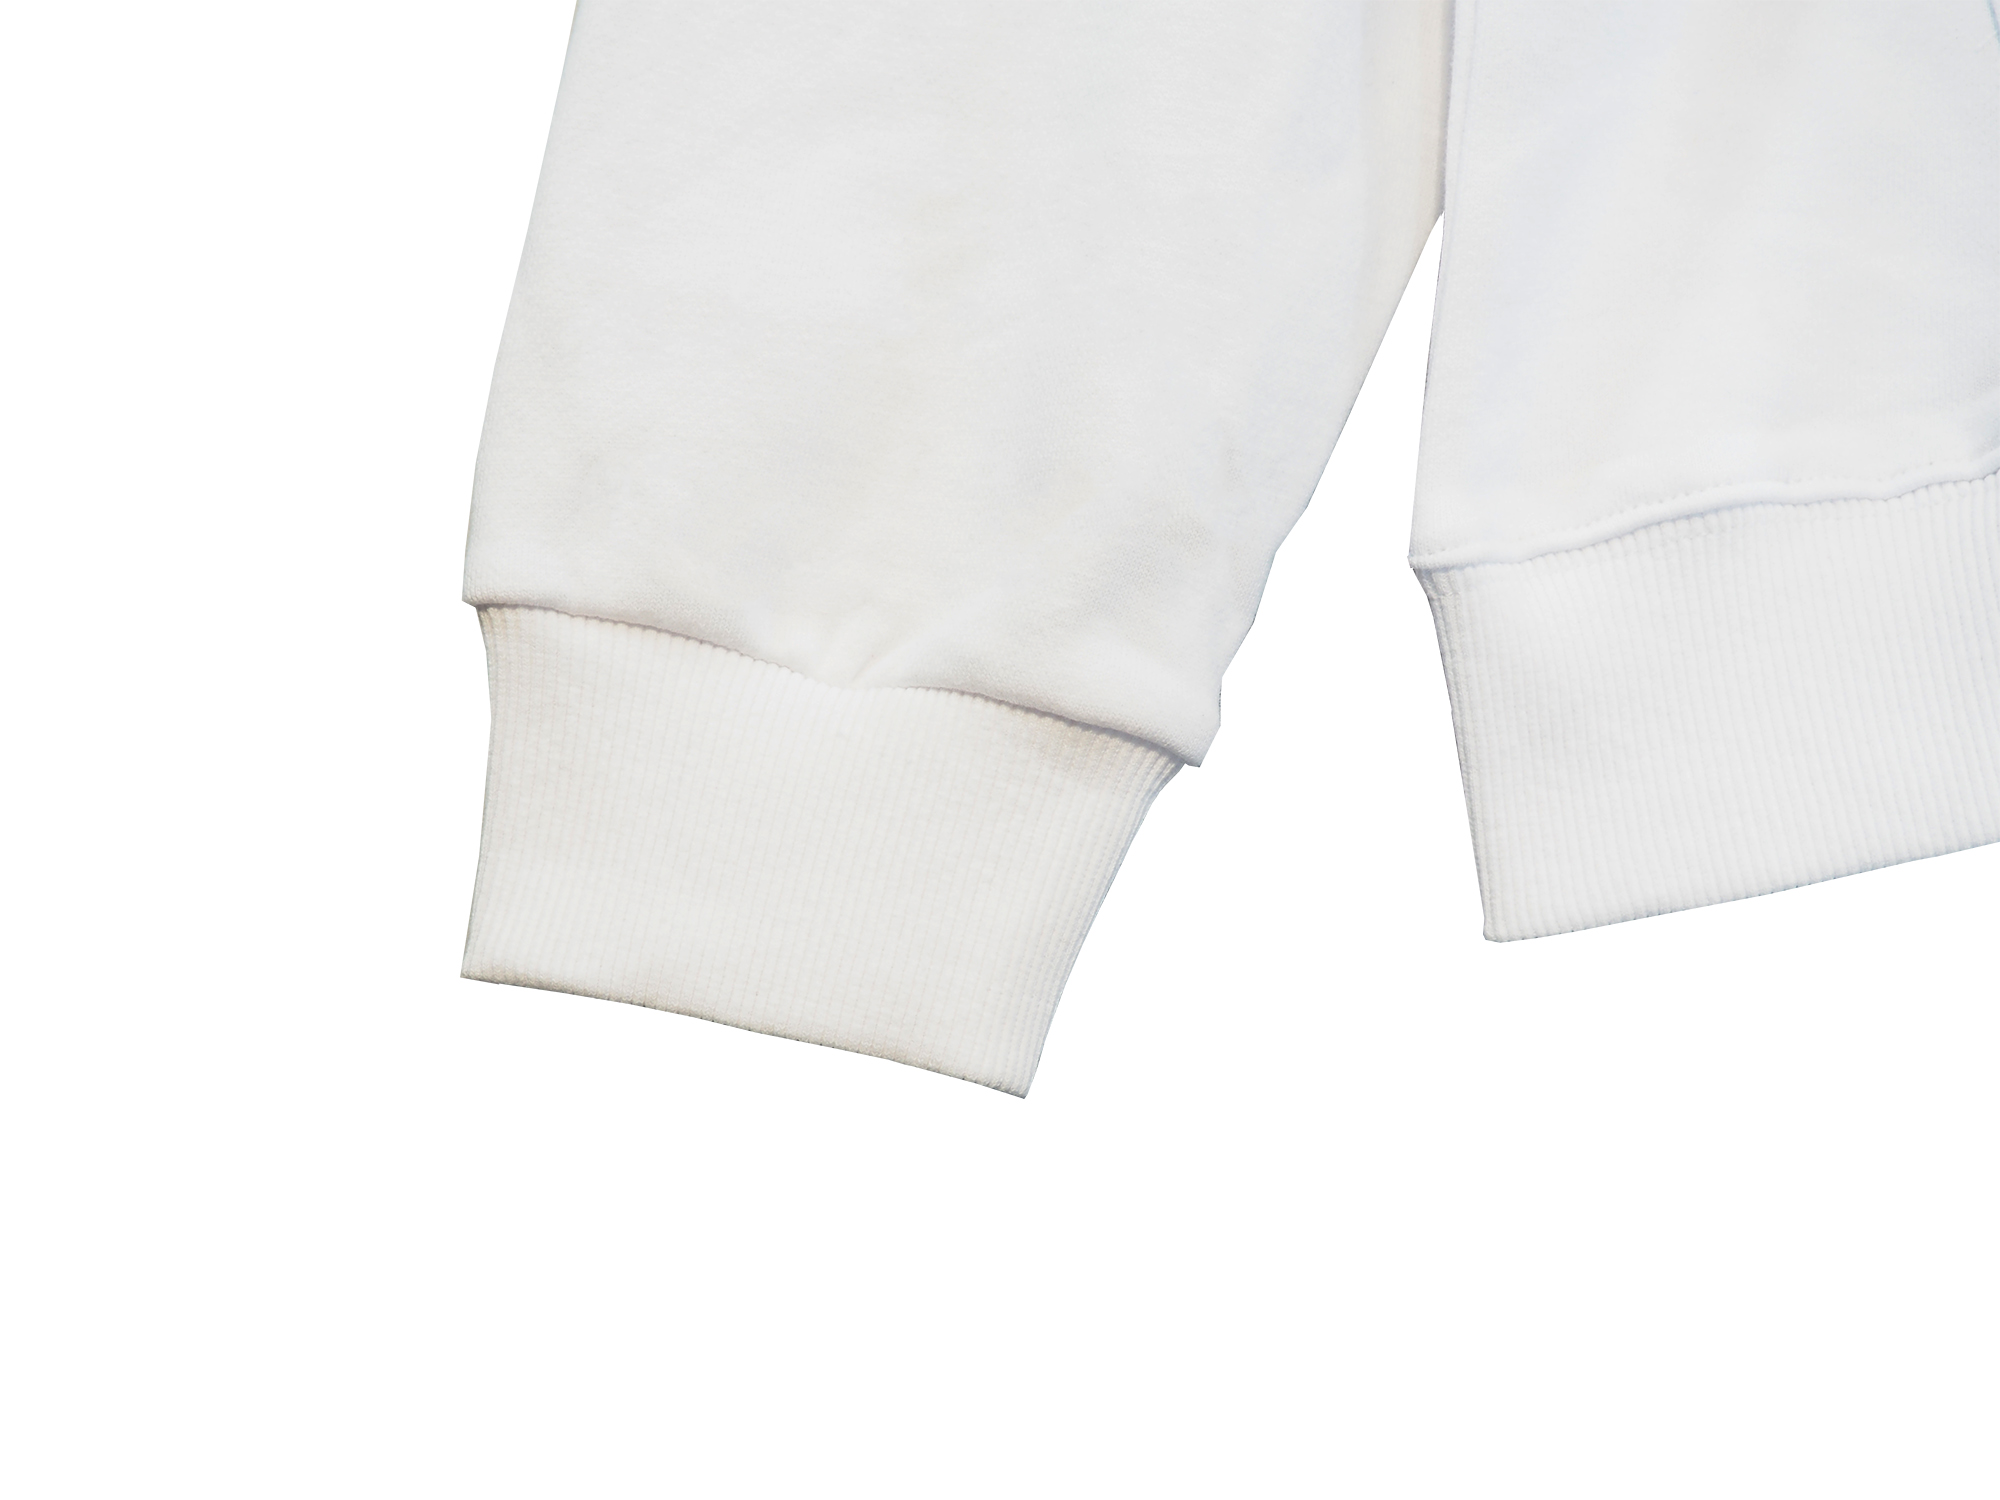 트랙 슈트 스포츠웨어 재킷 바지 무료 선택 트랙 슈트 캐주얼 조깅복 양복 2 조각 세트 훈련 세트 기술 착용 후 까마귀 크기 편안한 직물 -xl